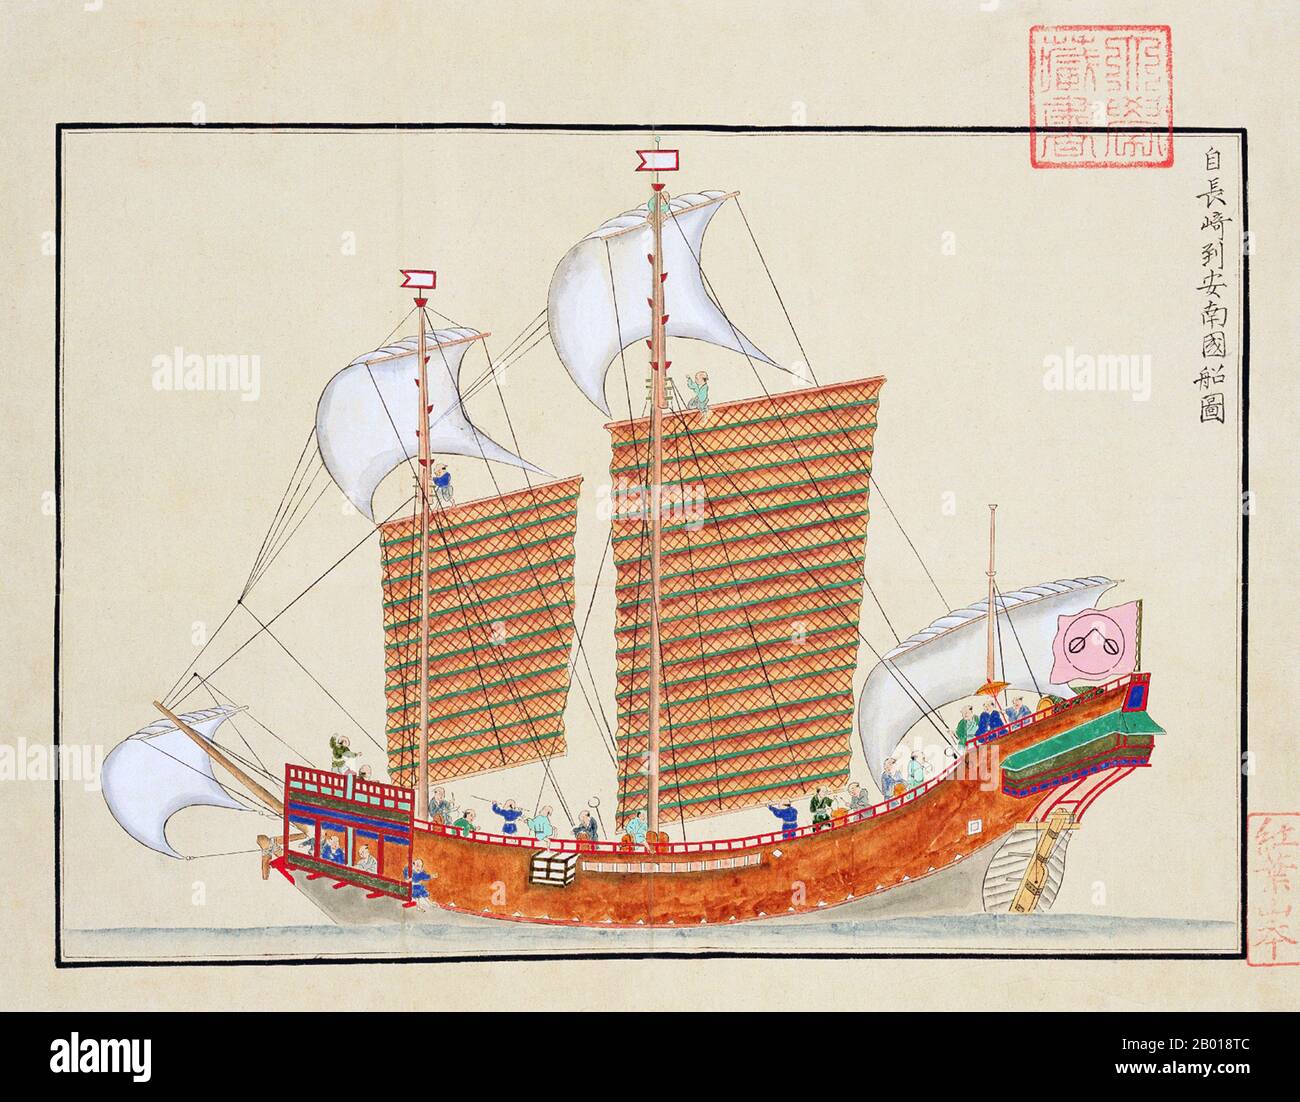 Japan: Ein Red Seal-Schiff der Araki-Handelsfamilie aus dem 17.. Jahrhundert, das von Nagasaki nach Annam (Vietnam) ausging. Gemälde aus der 'Gaiban Shokan', zusammengestellt von Kondo Seisai (1771-1829), c.. 1790. Der 'Gaiban Shokan' wurde als Nachschlagewerk für 'Gaiban Tsusho' vorbereitet, die Zusammenstellung diplomatischer Dokumente des Tokugawa-Shogunats, die von Kondo Seisai, dem Richter von Nagasaki und dem Richter von Büchern und Aufzeichnungen, erstellt wurde. Es enthält Kopien diplomatischer Papiere, darunter 33 Zertifikate, die mit dem Millionensiegel des Shogun für offiziell genehmigte Auslandsreisen beeindruckt sind. Stockfoto